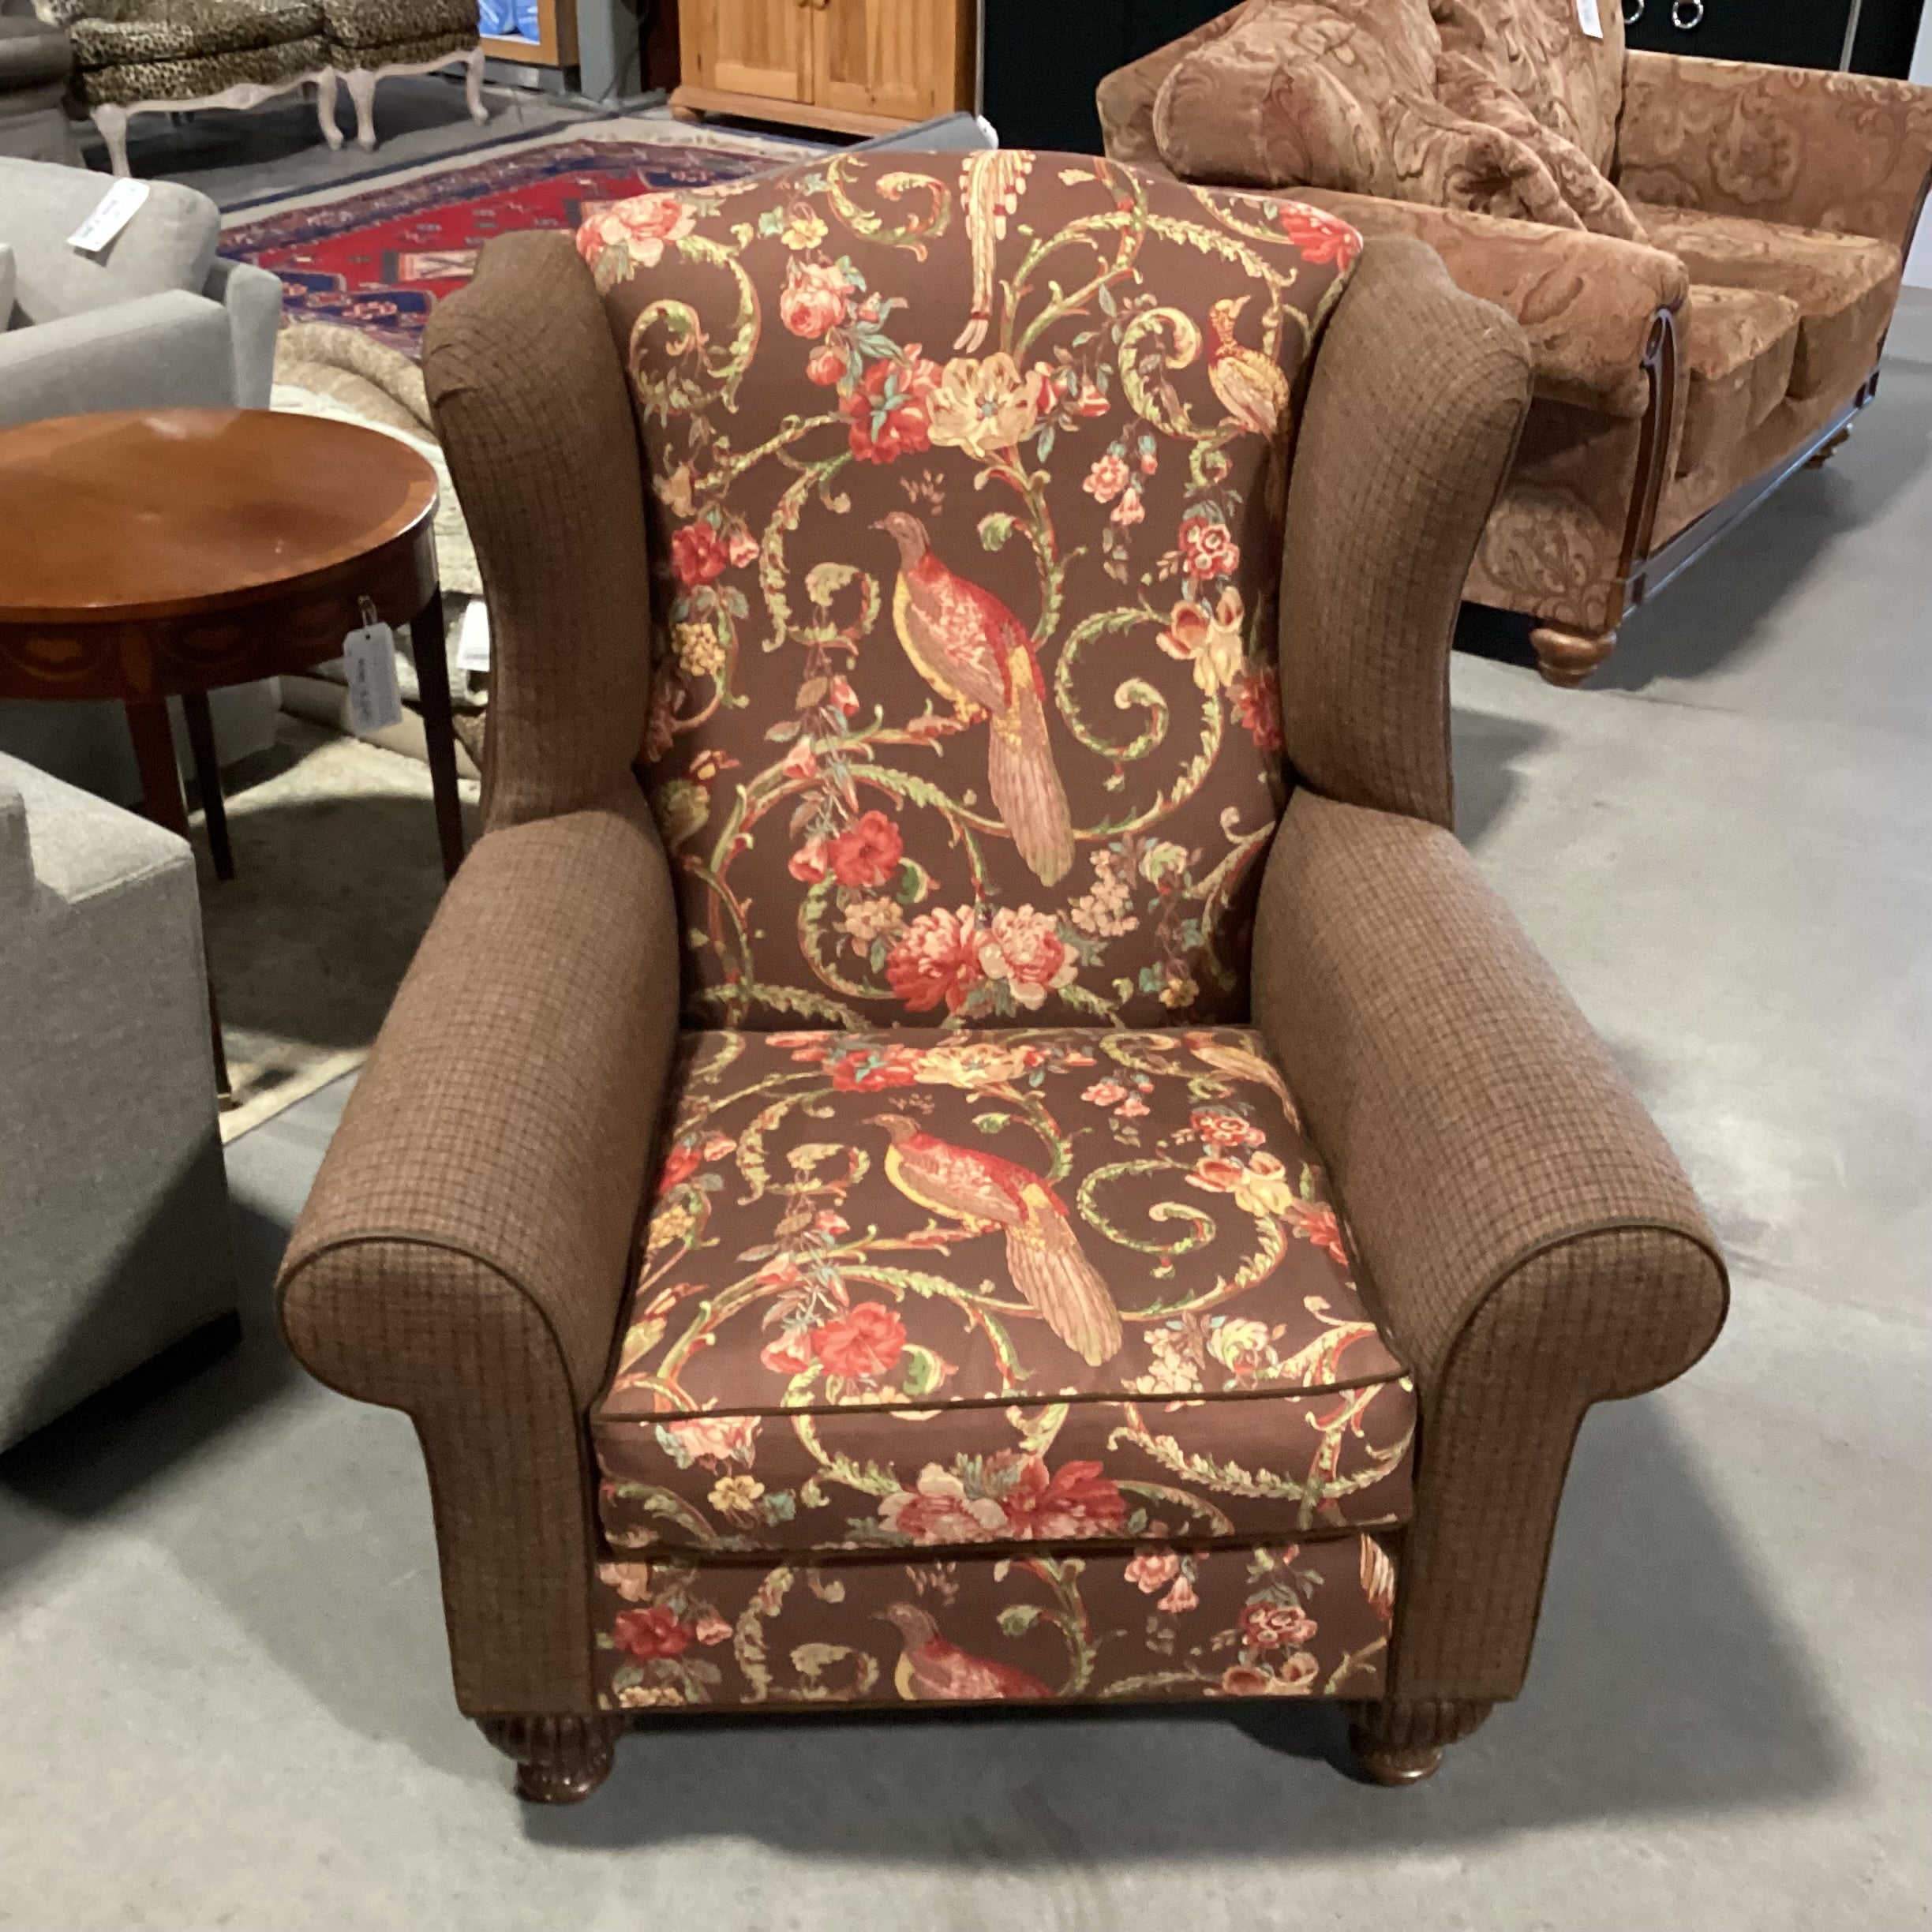 JM Paquet Leather Wool Plaid & Bird Linen Chair 39"x 34"x 44"